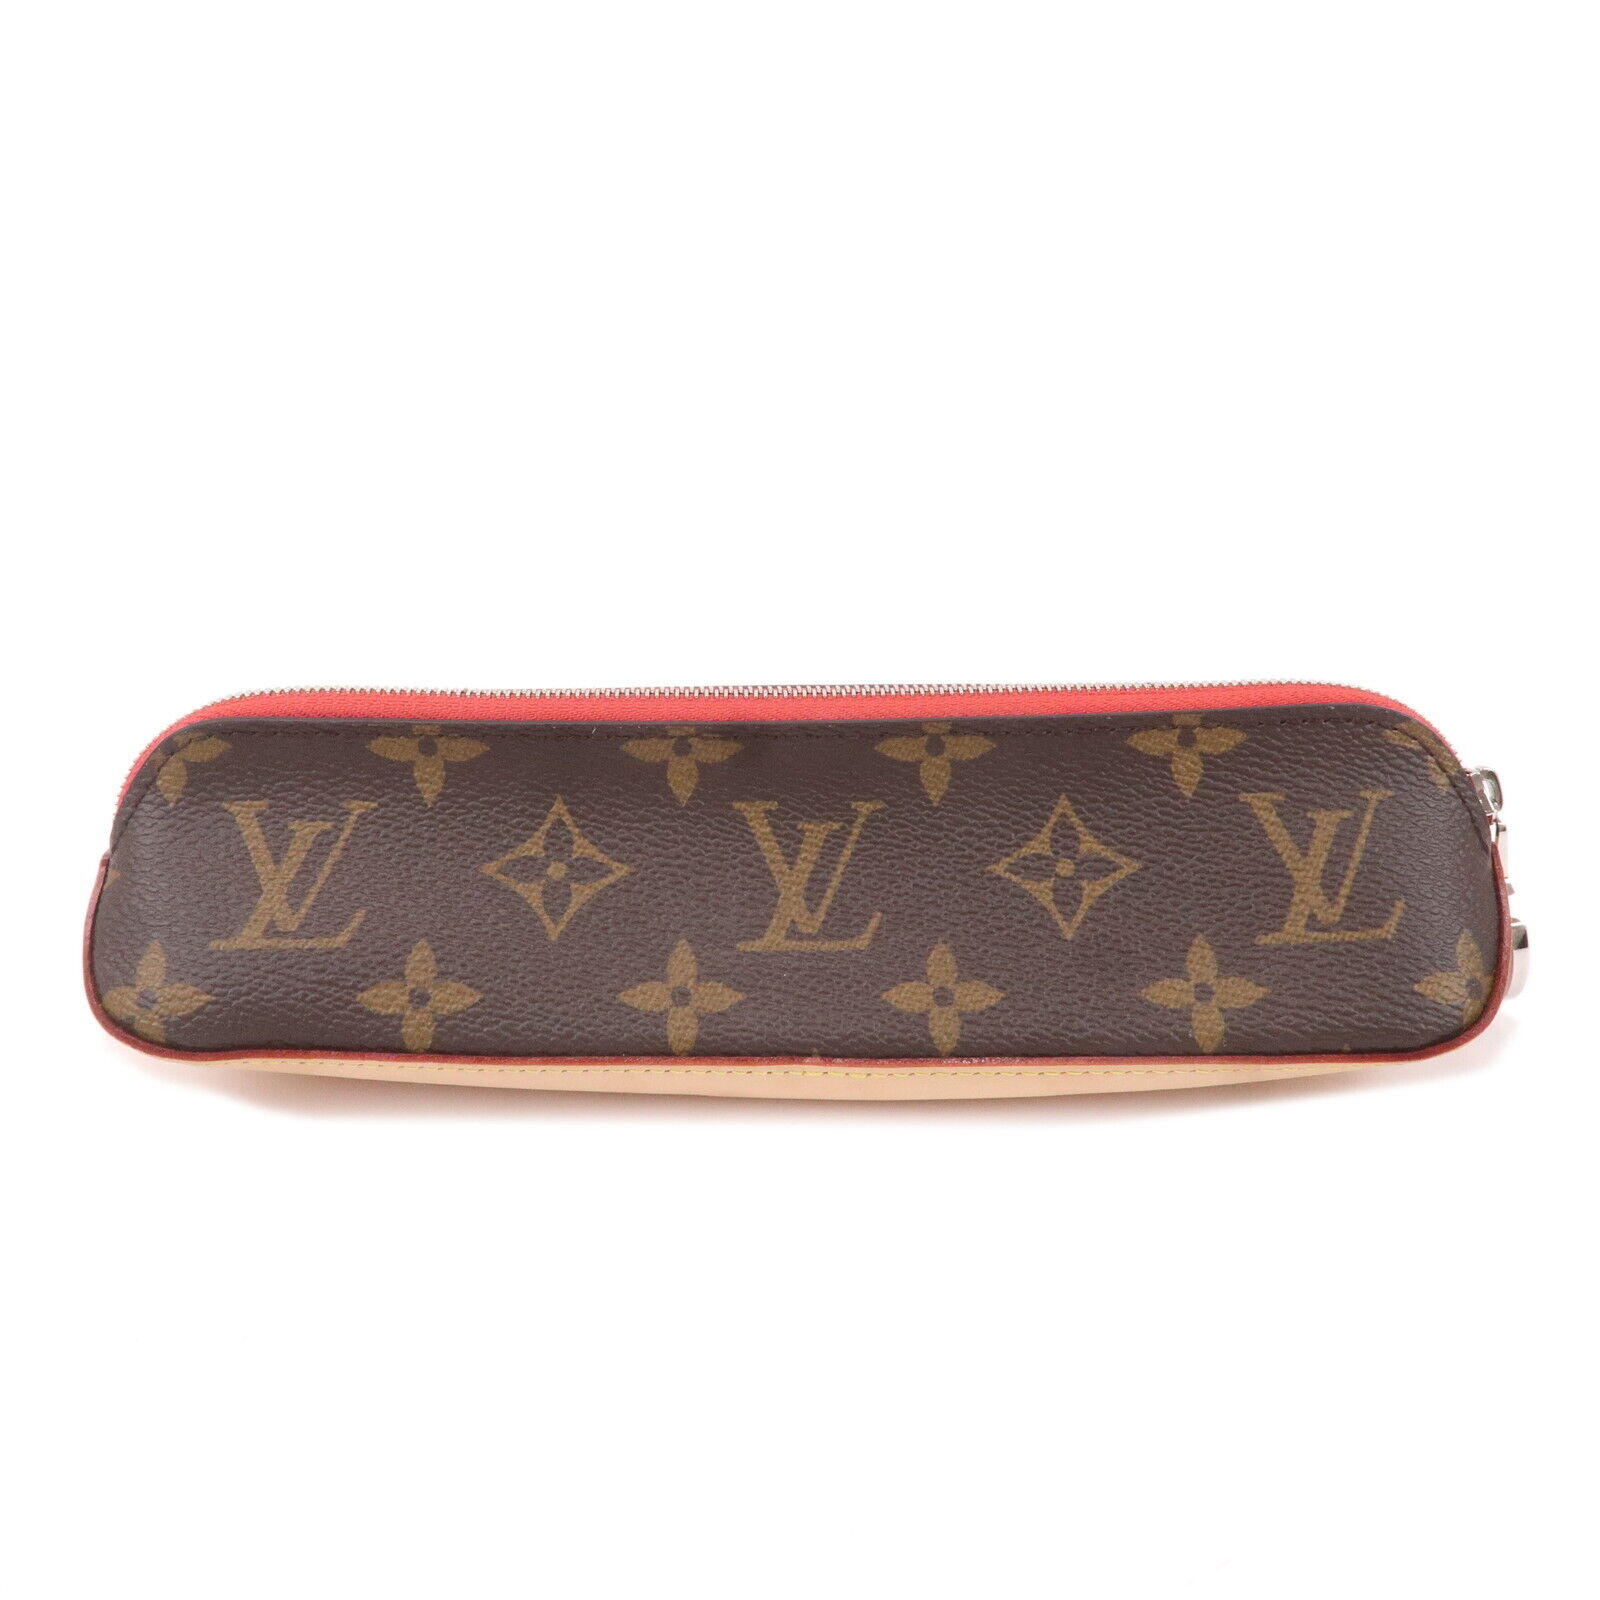 Auth Louis Vuitton Monogram Trousse Elizabeth Pen Case Rouge GI0009 Used